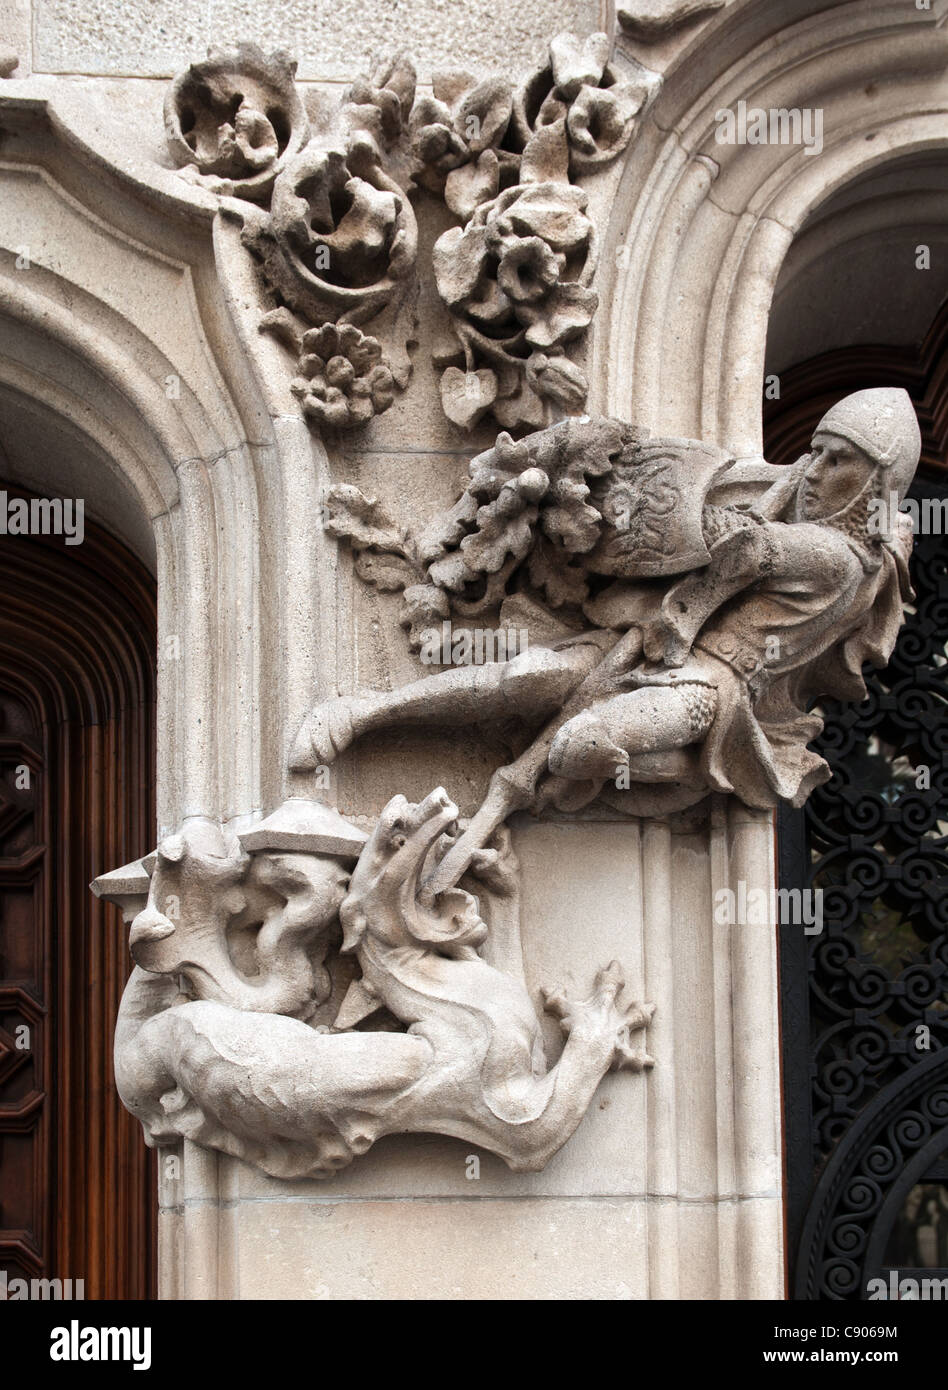 George und der Drachenstein Skulptur auf Gebäude in Barcelona, Spanien. Stockfoto